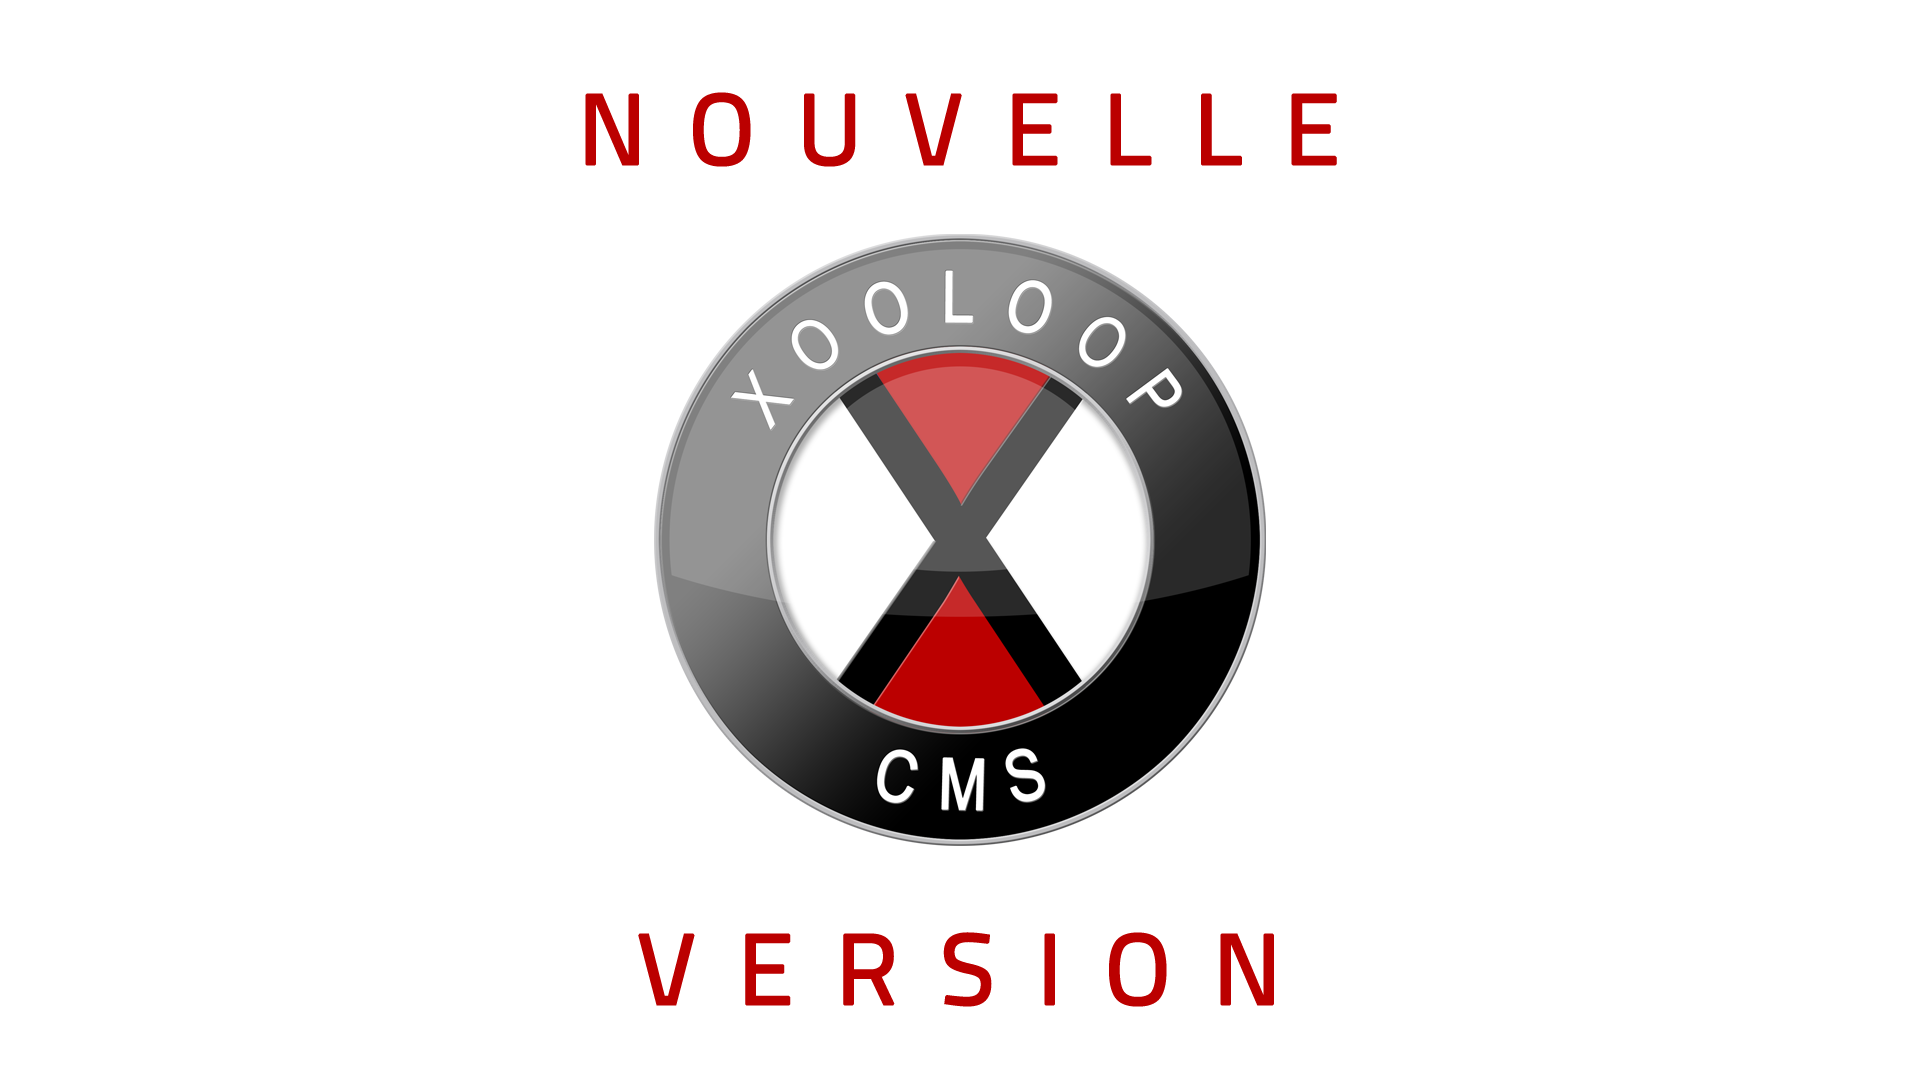 Nouvelle version de Xooloop CMS (v3.7.3)